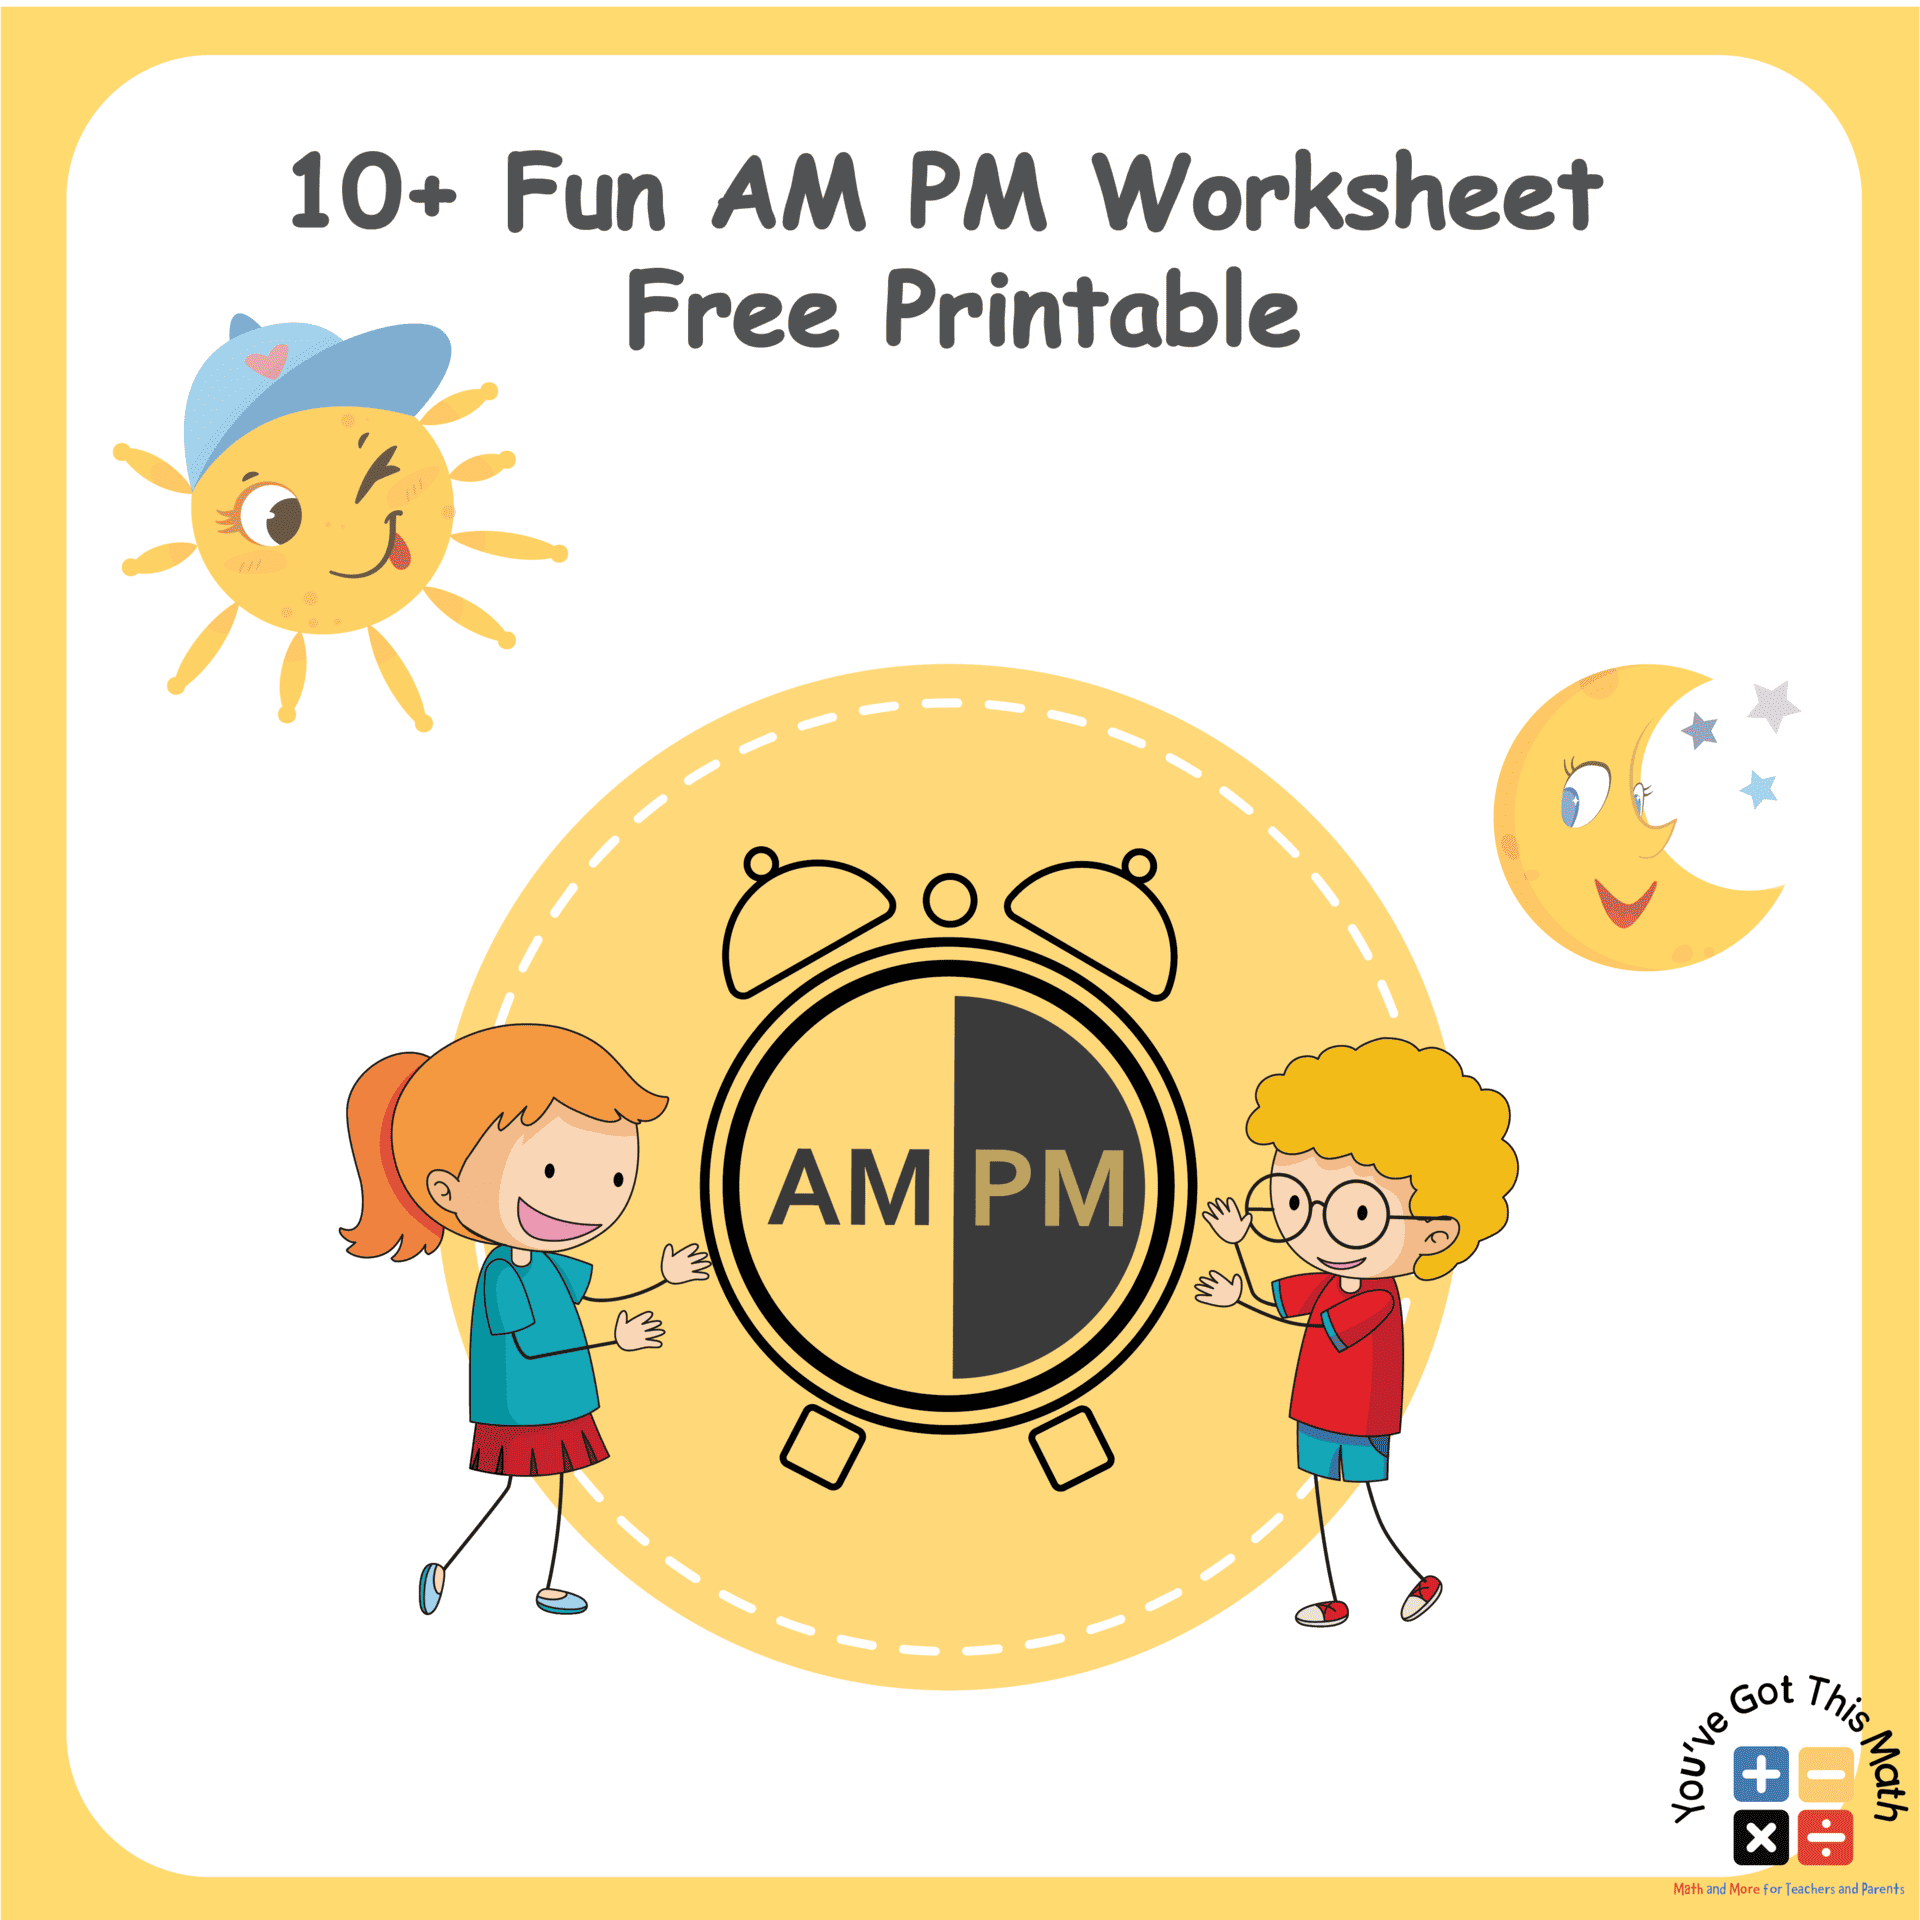 12 Fun AM PM Worksheet | Free Printable